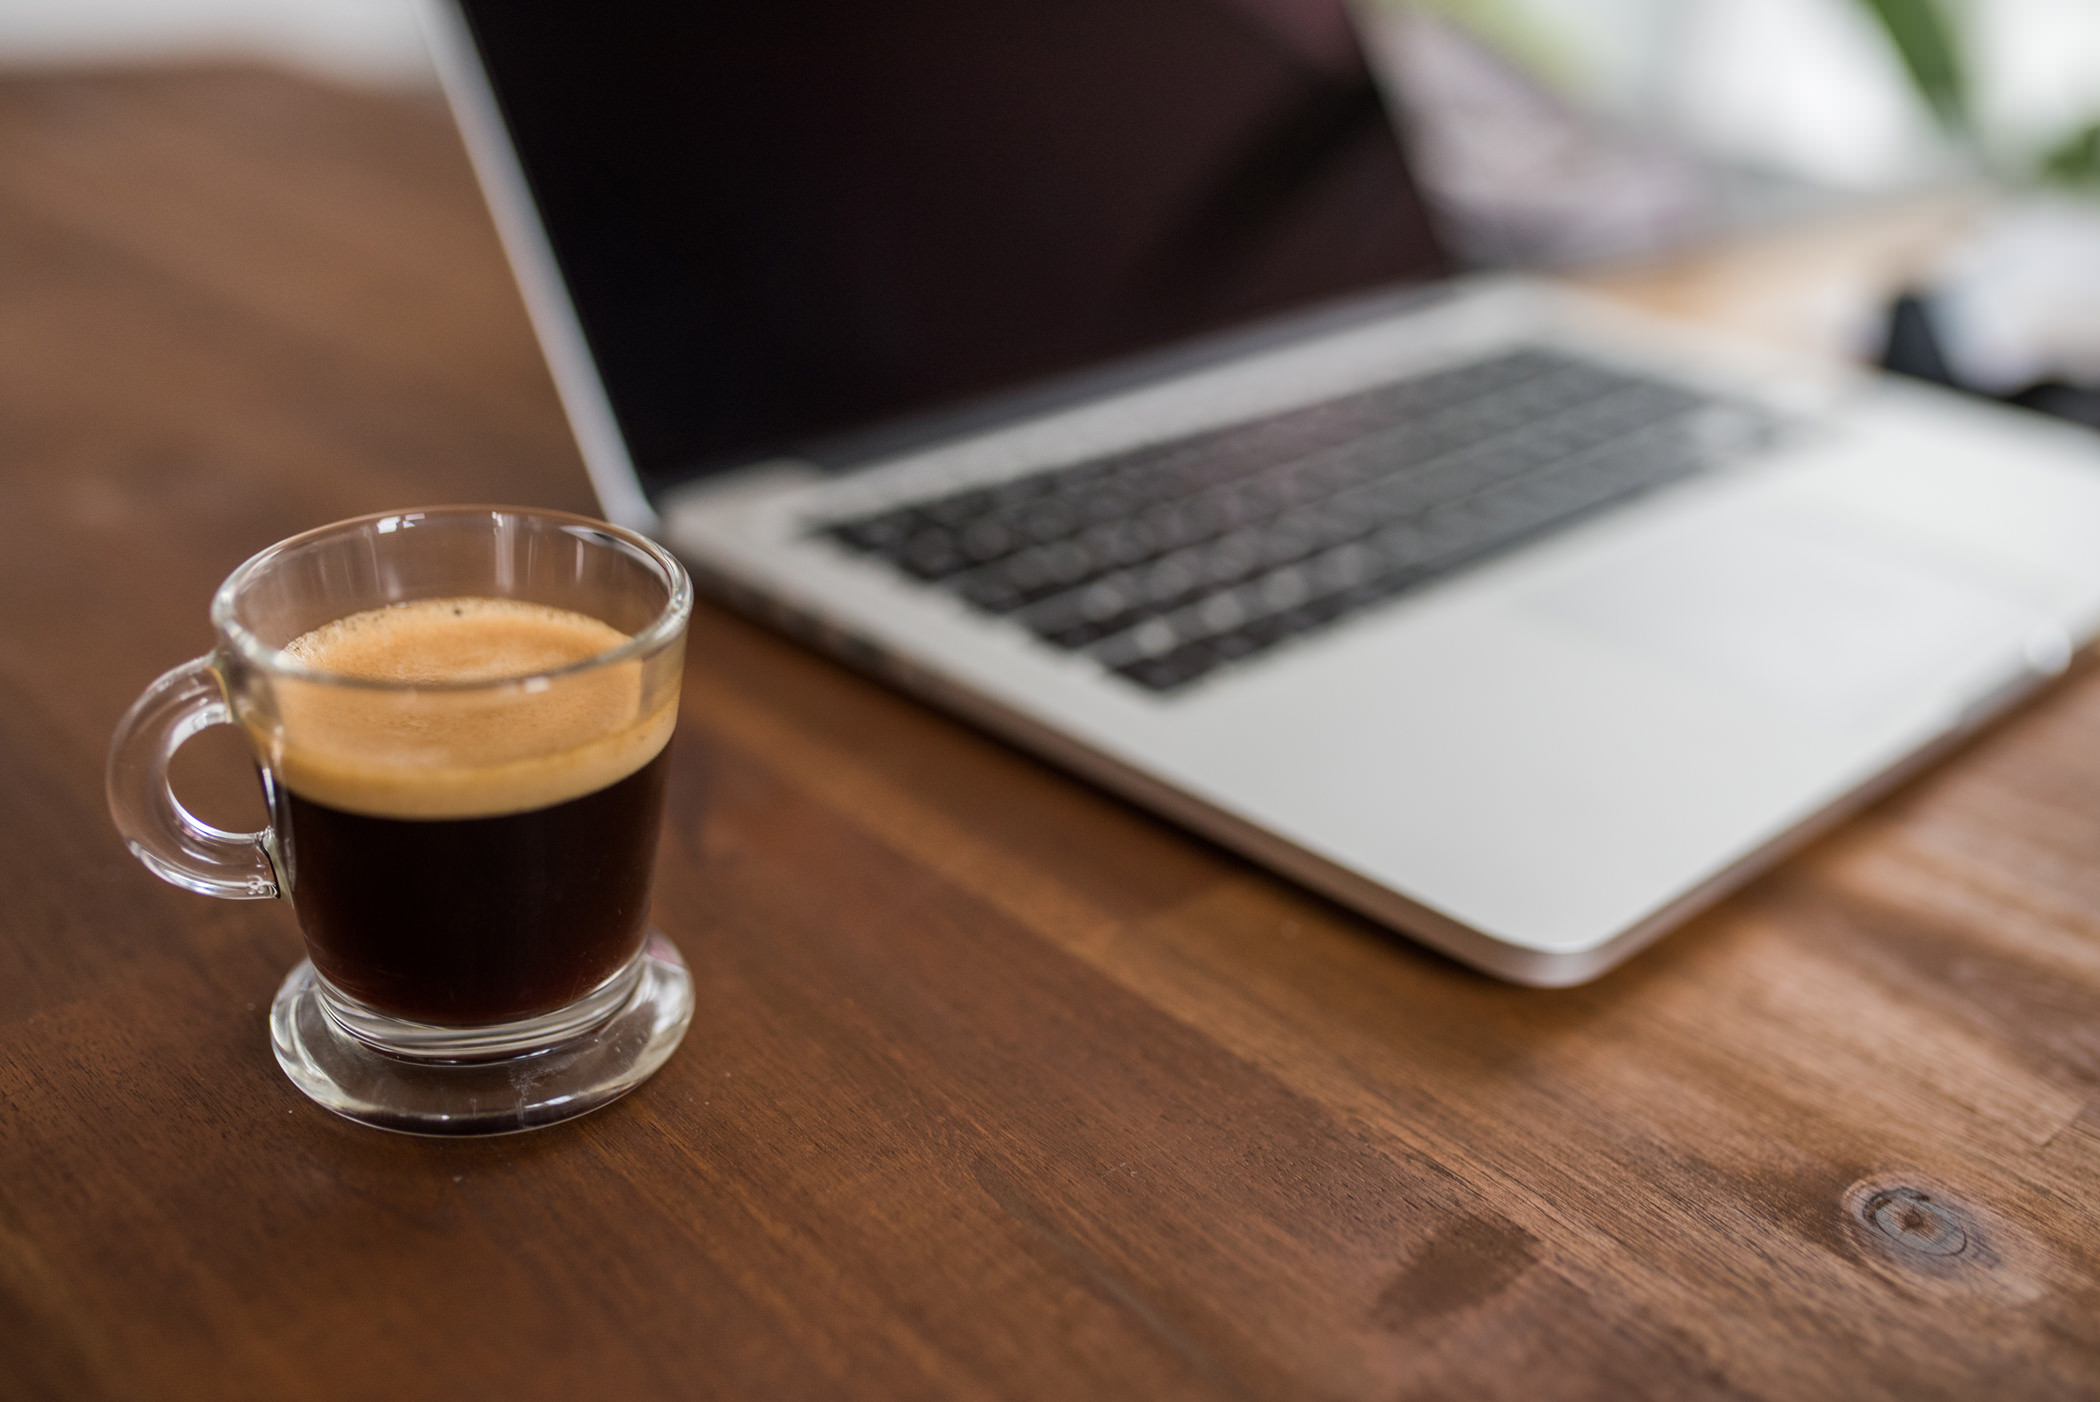 MacBook Computer & Espresso Coffee RoyaltyFree Stock